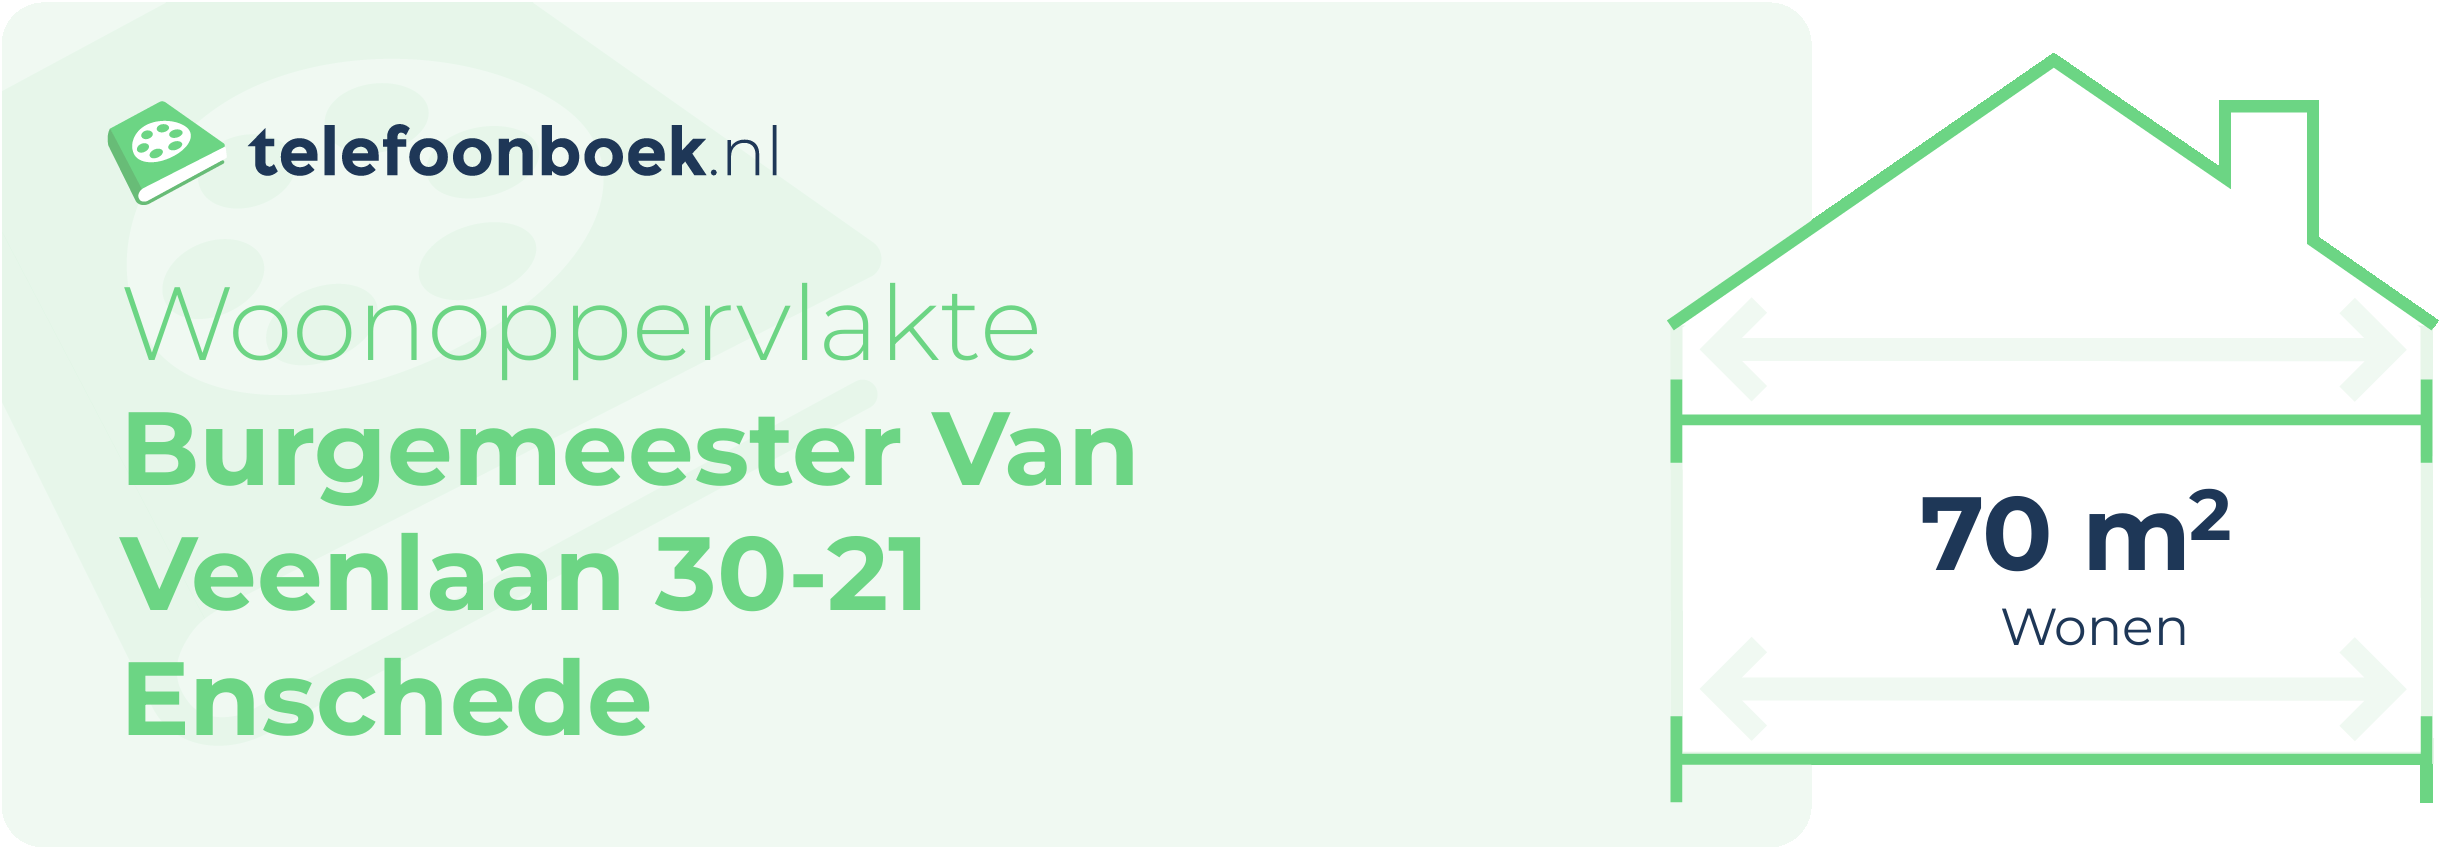 Woonoppervlakte Burgemeester Van Veenlaan 30-21 Enschede